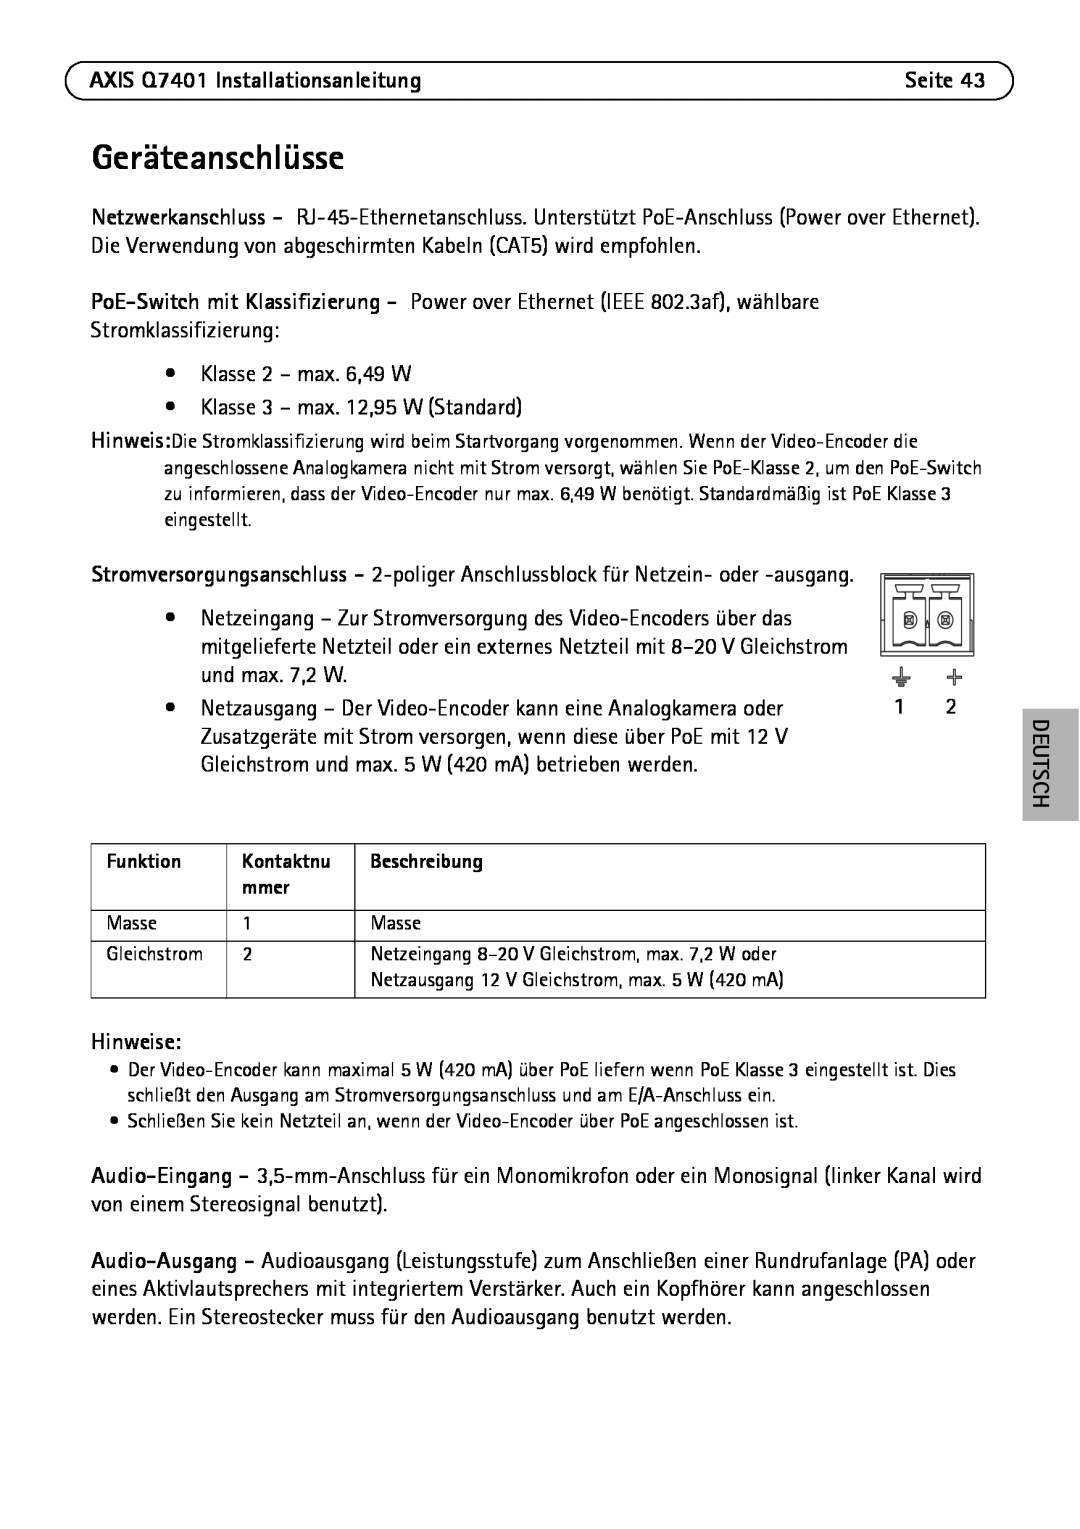 Axis Communications manual Geräteanschlüsse, AXIS Q7401 Installationsanleitung, Hinweise, Deutsch 